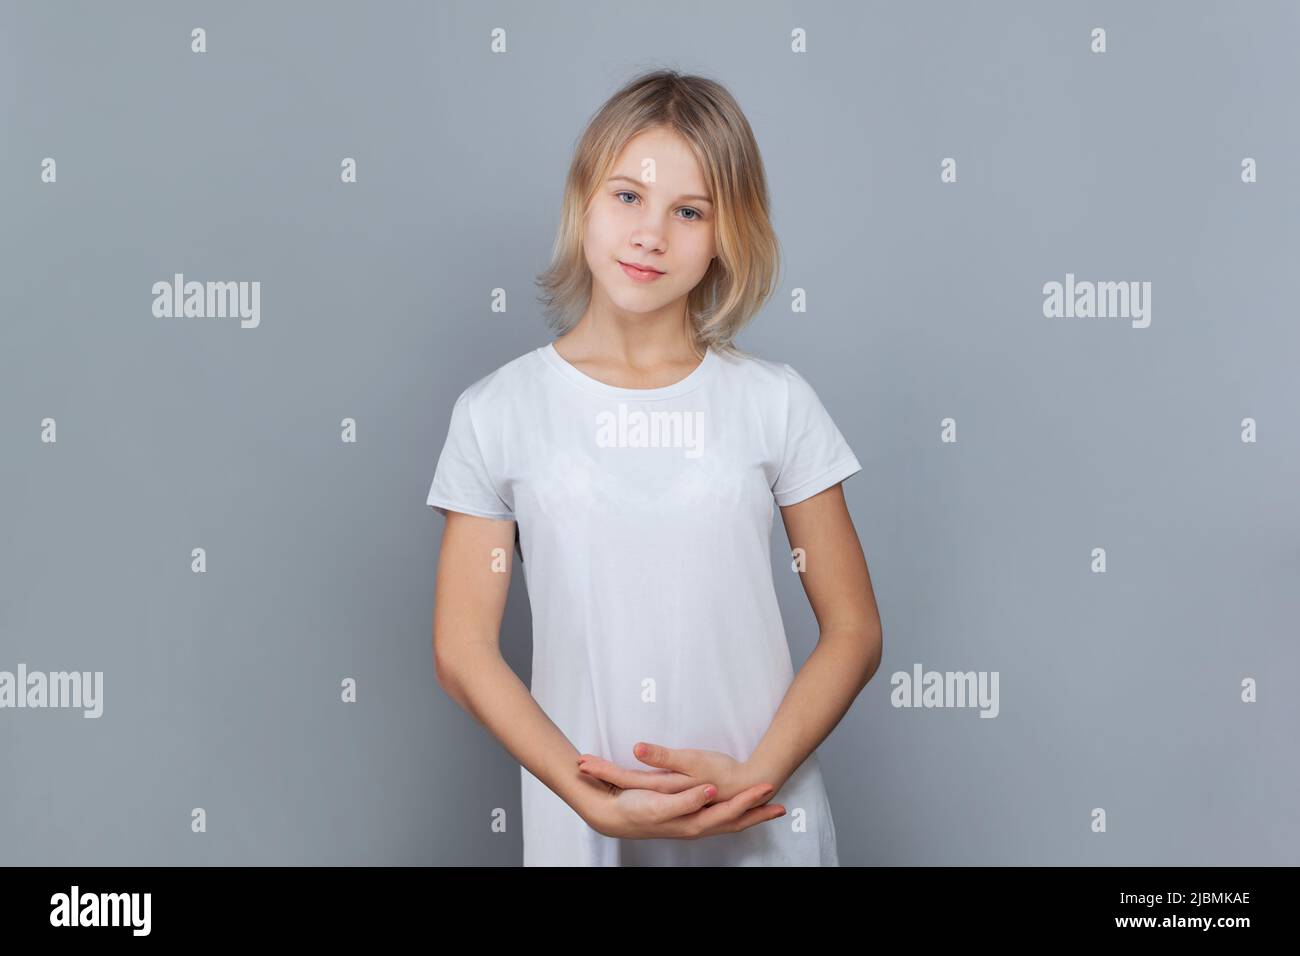 Jeune fille gaie de 10-12 ans posant contre un mur gris. Banque D'Images